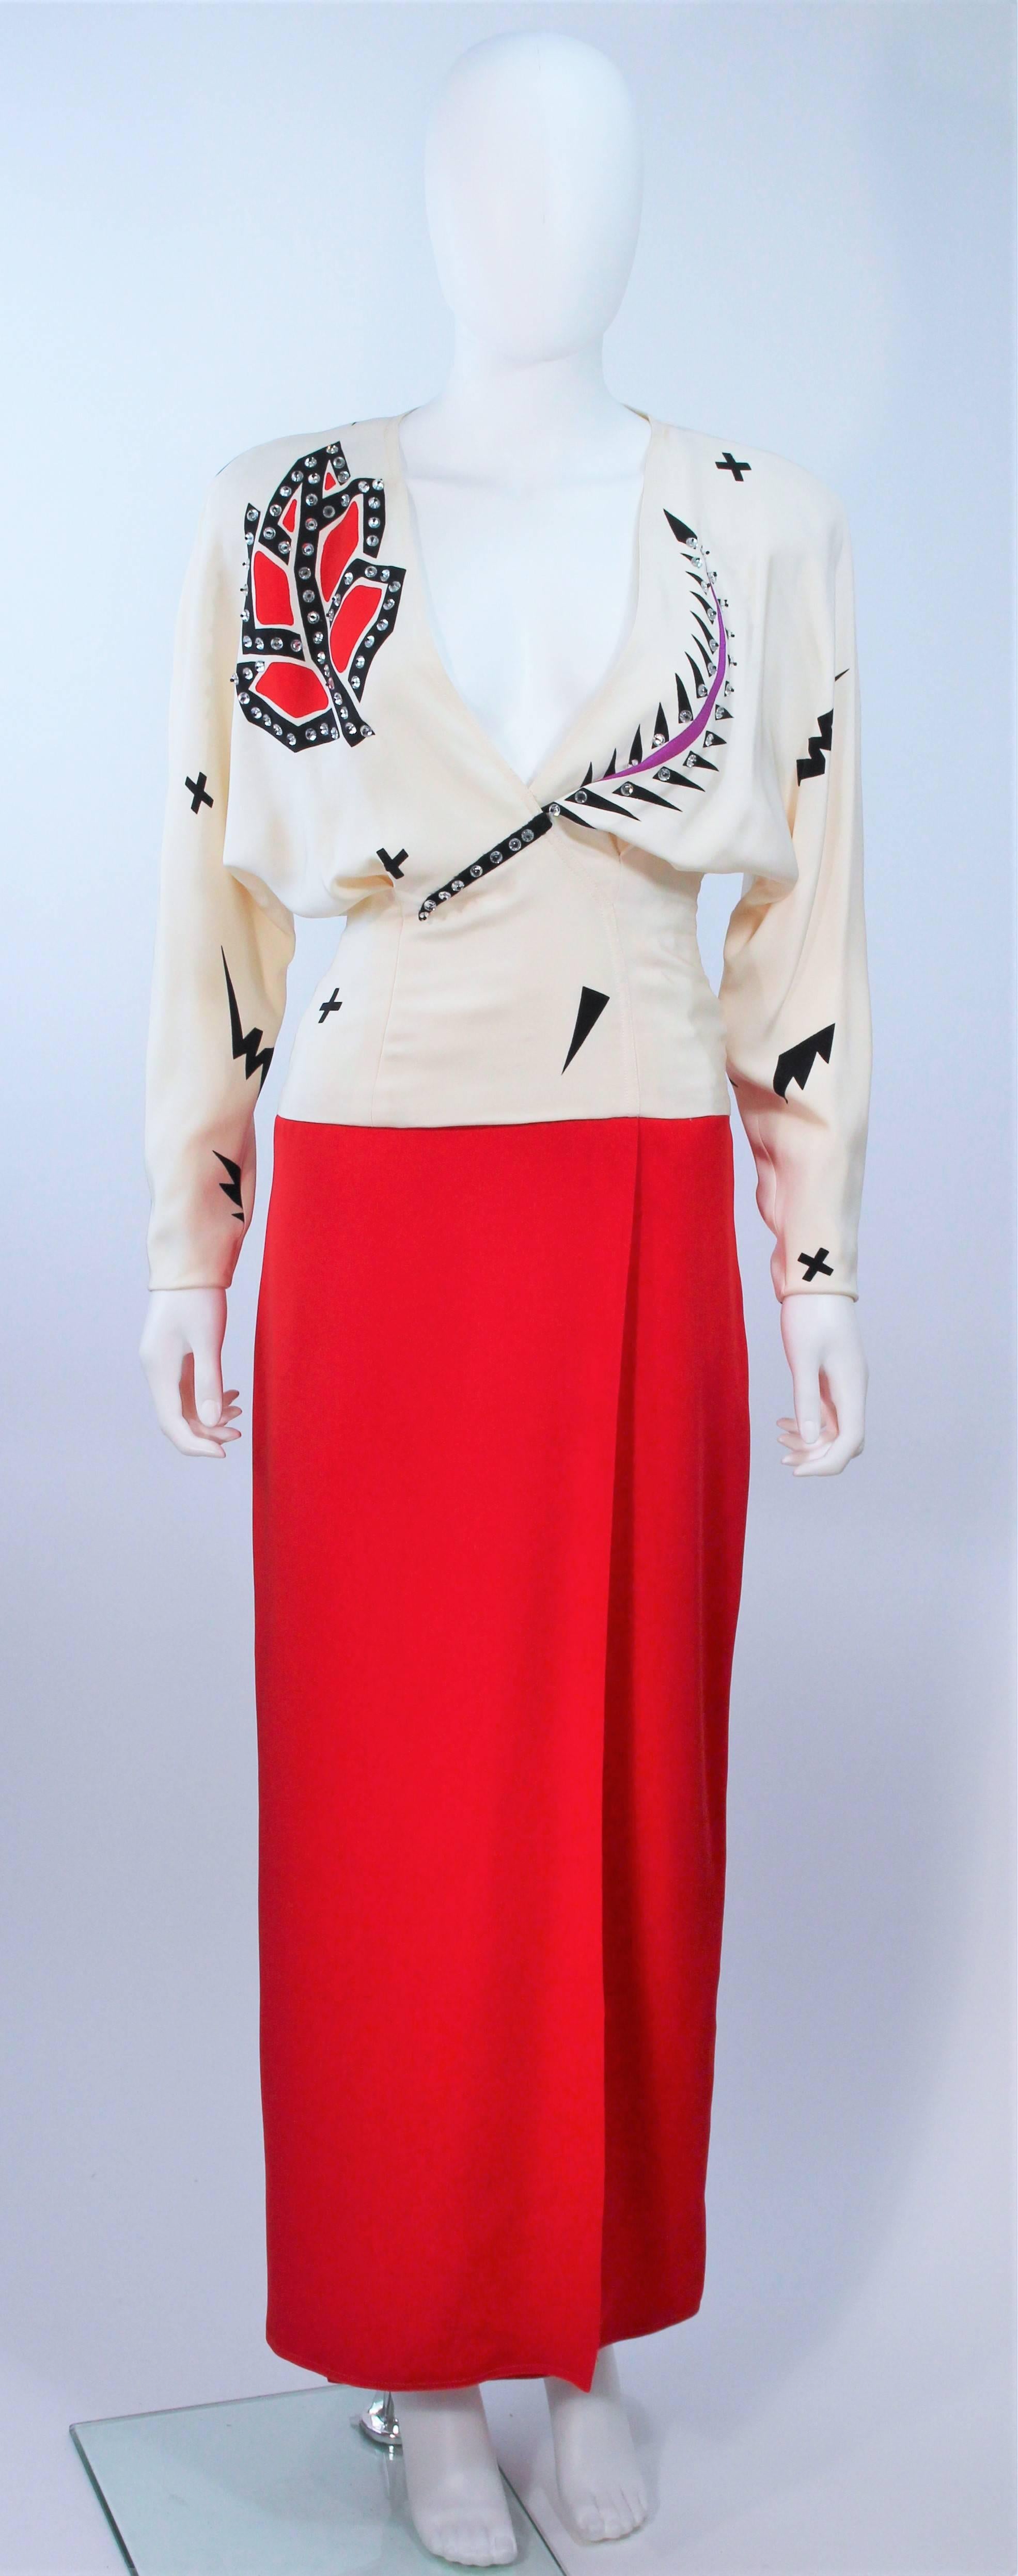  Cette robe de Fabrice est composée d'une soie écrue et rouge. Comprend une jupe pleine longueur avec fente et des manches de style drapé. Il y a une fermeture à glissière latérale et une application de strass. Vintage, en excellent état. 

 